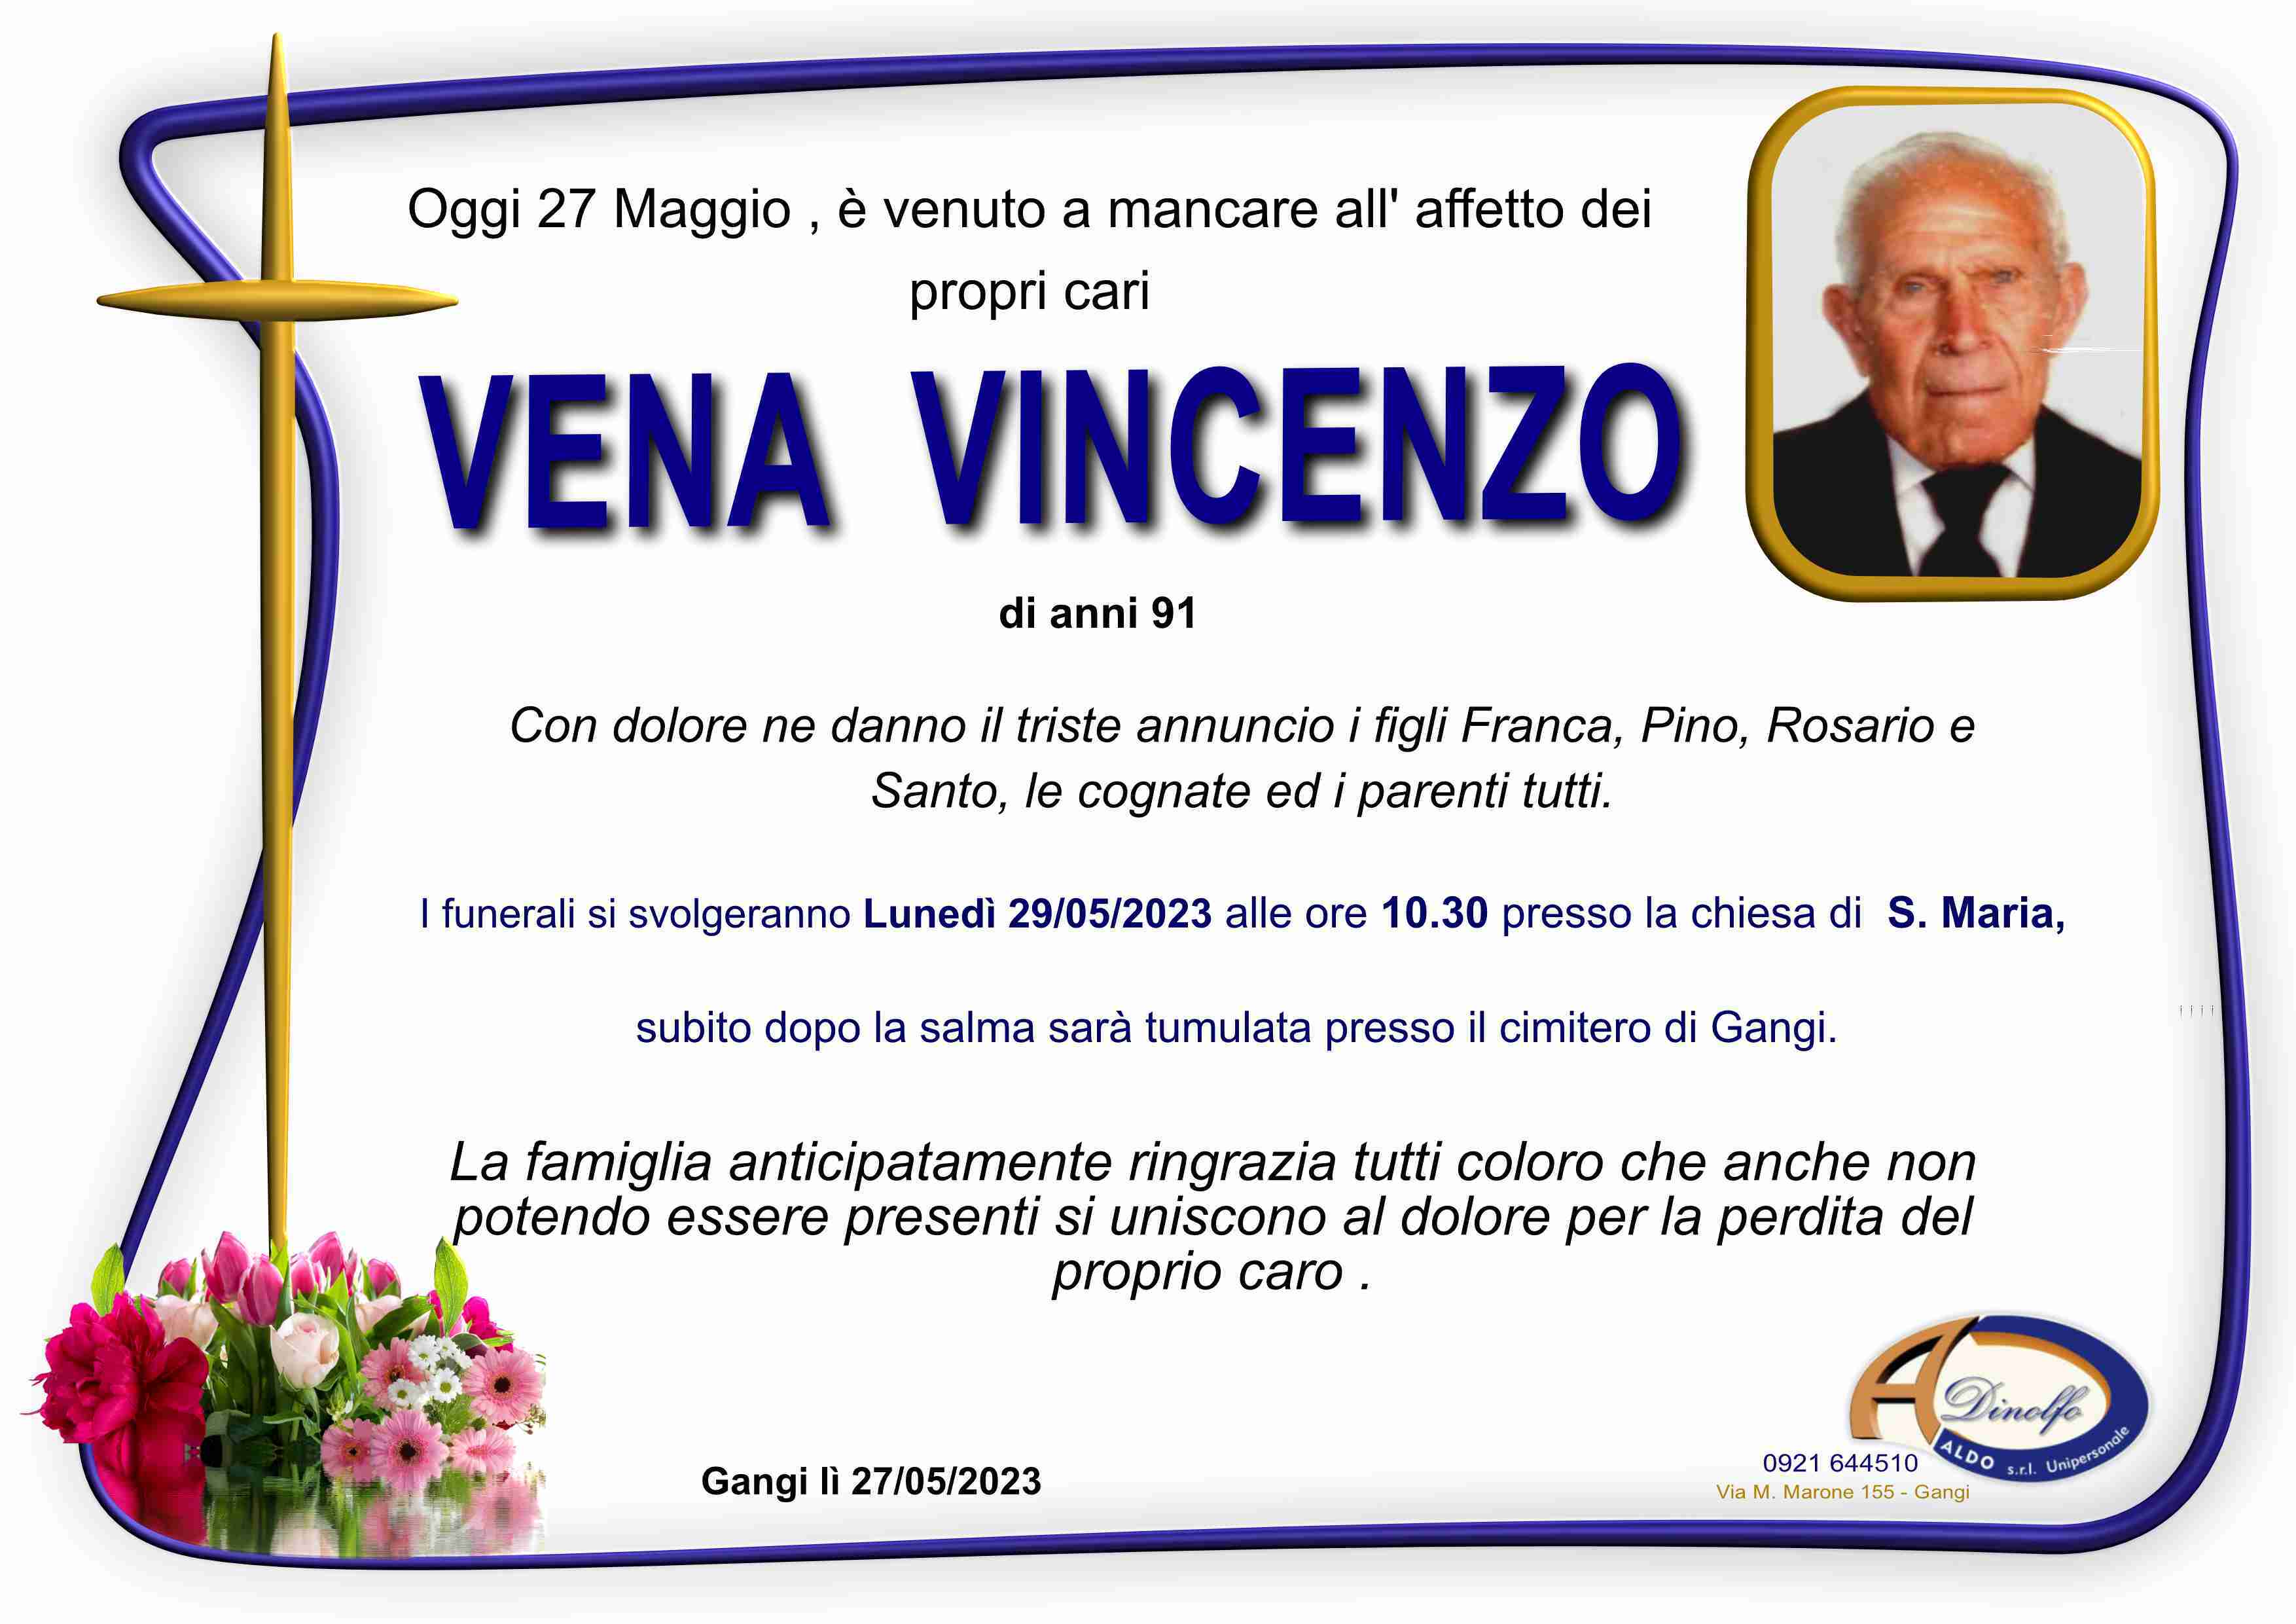 Vincenzo Vena